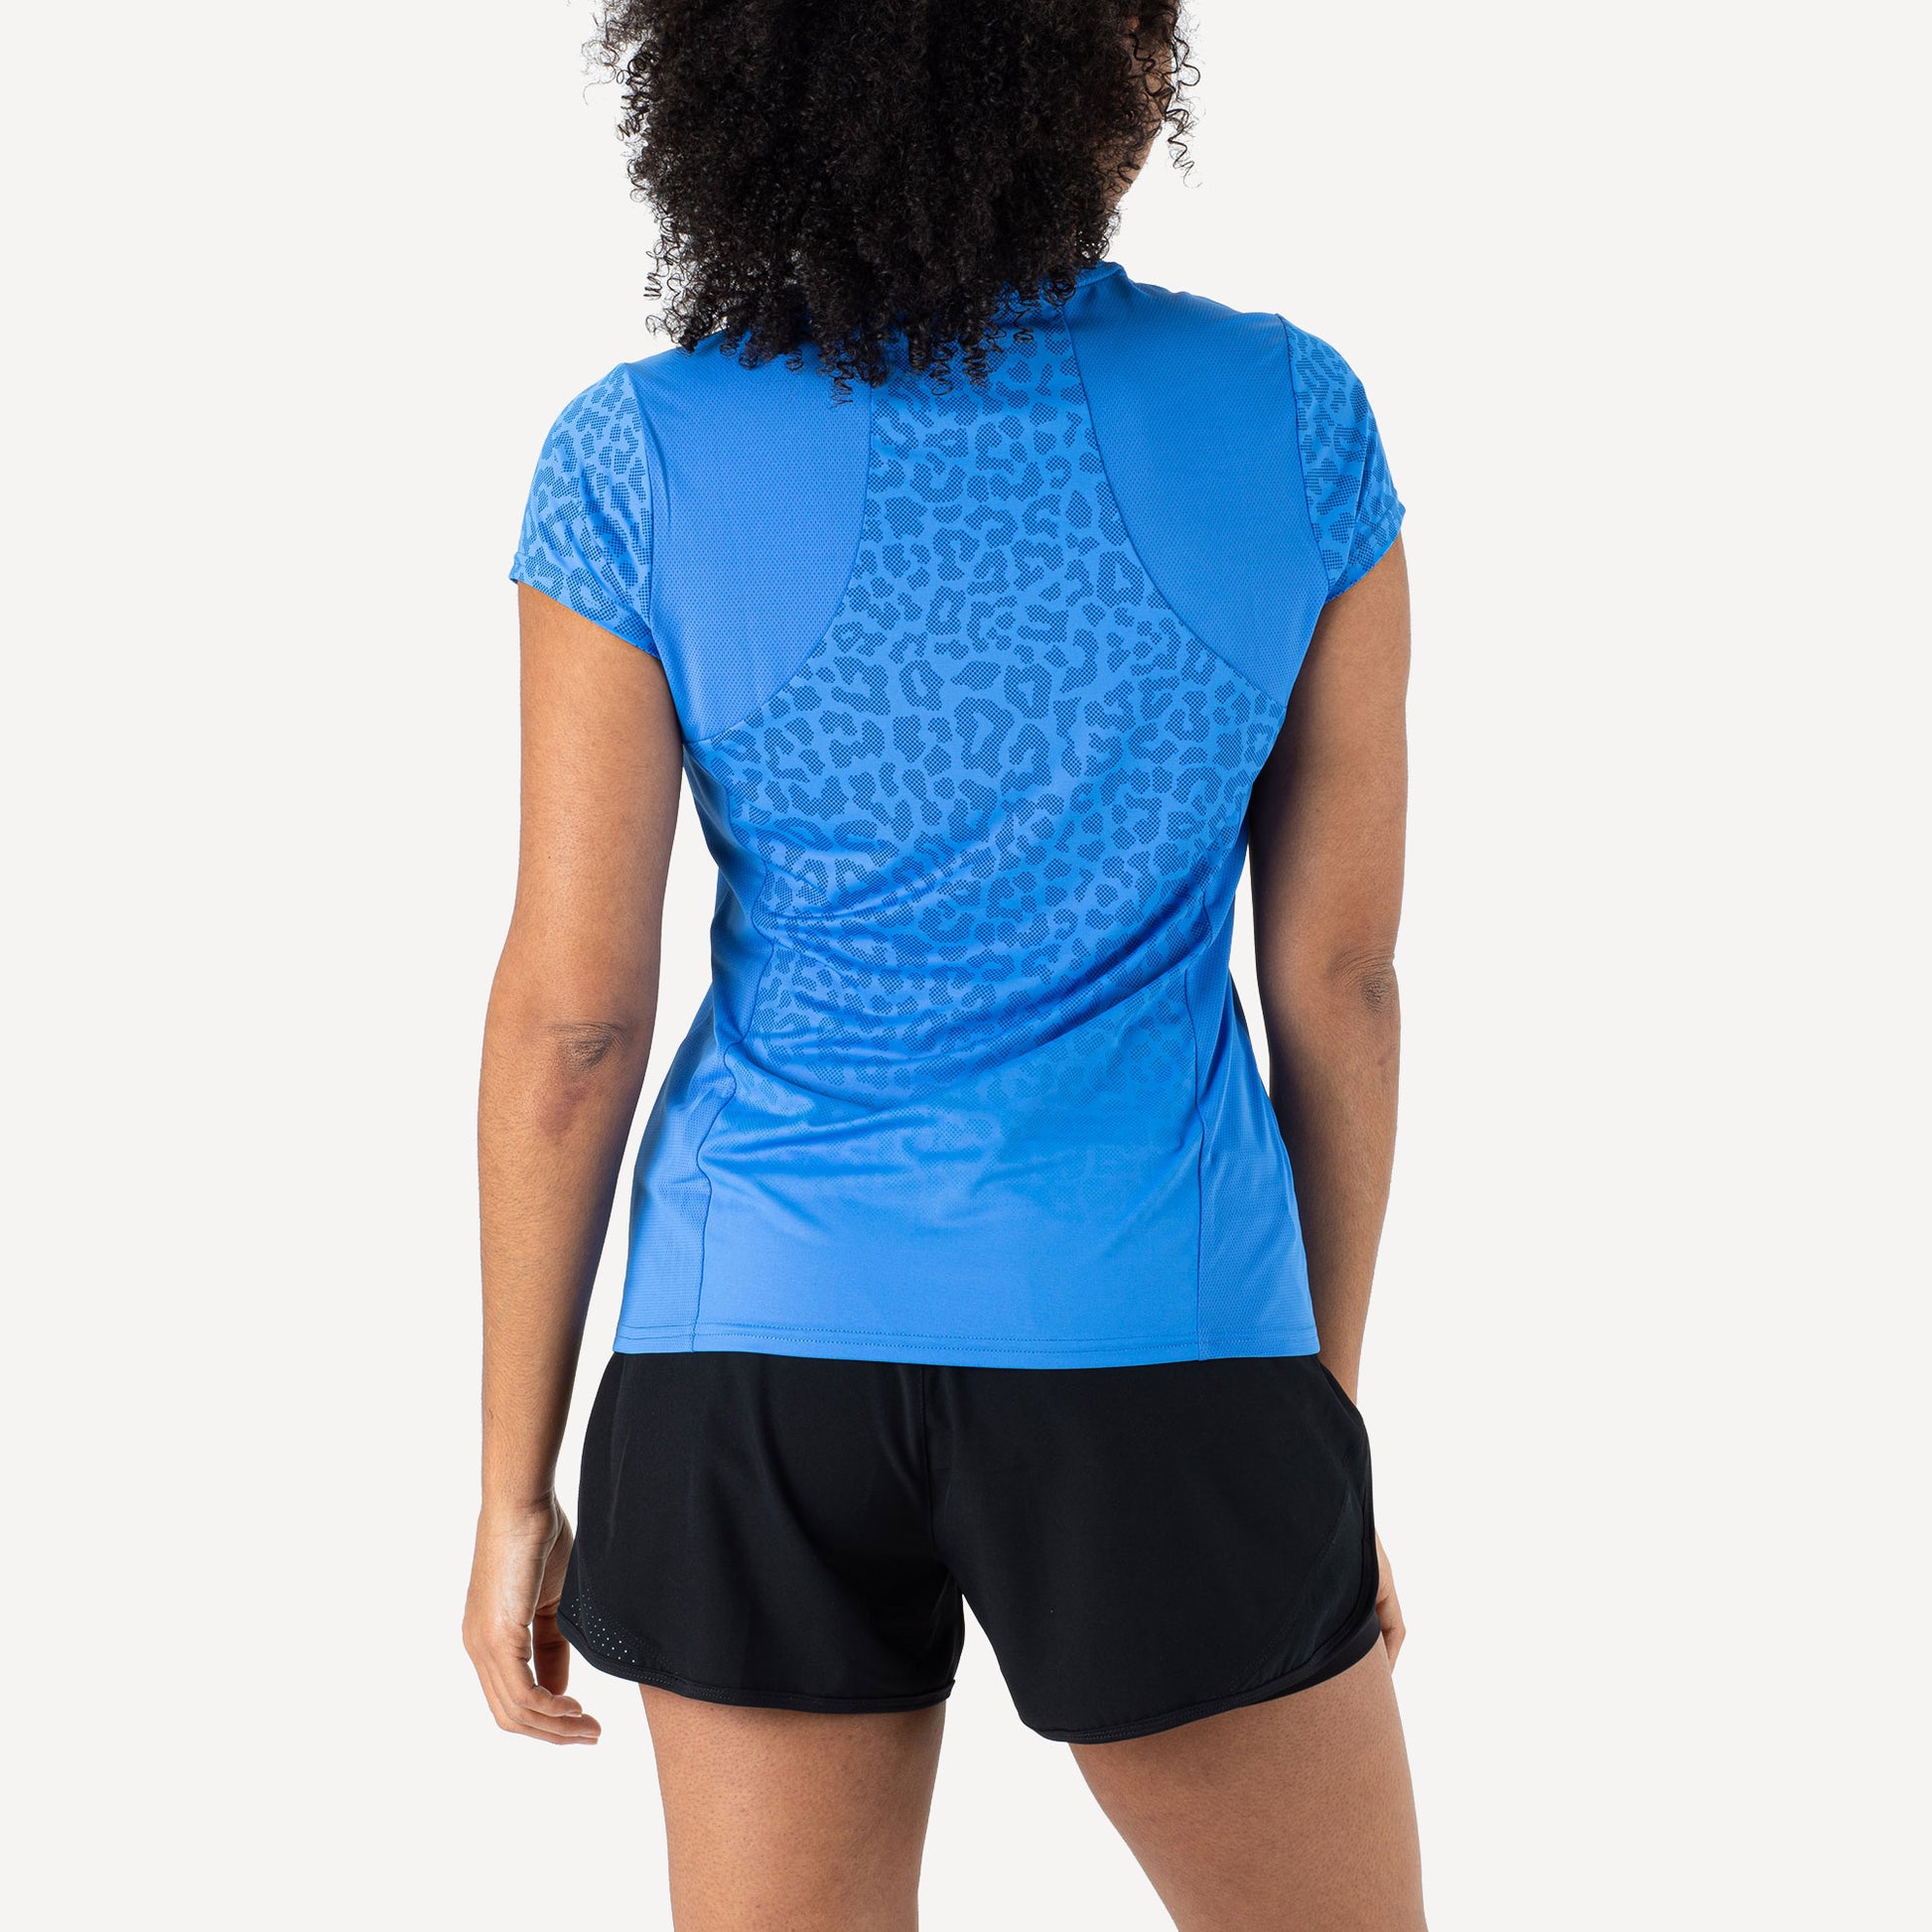 Sjeng Sports Bliz Women's Tennis Shirt Blue (2)